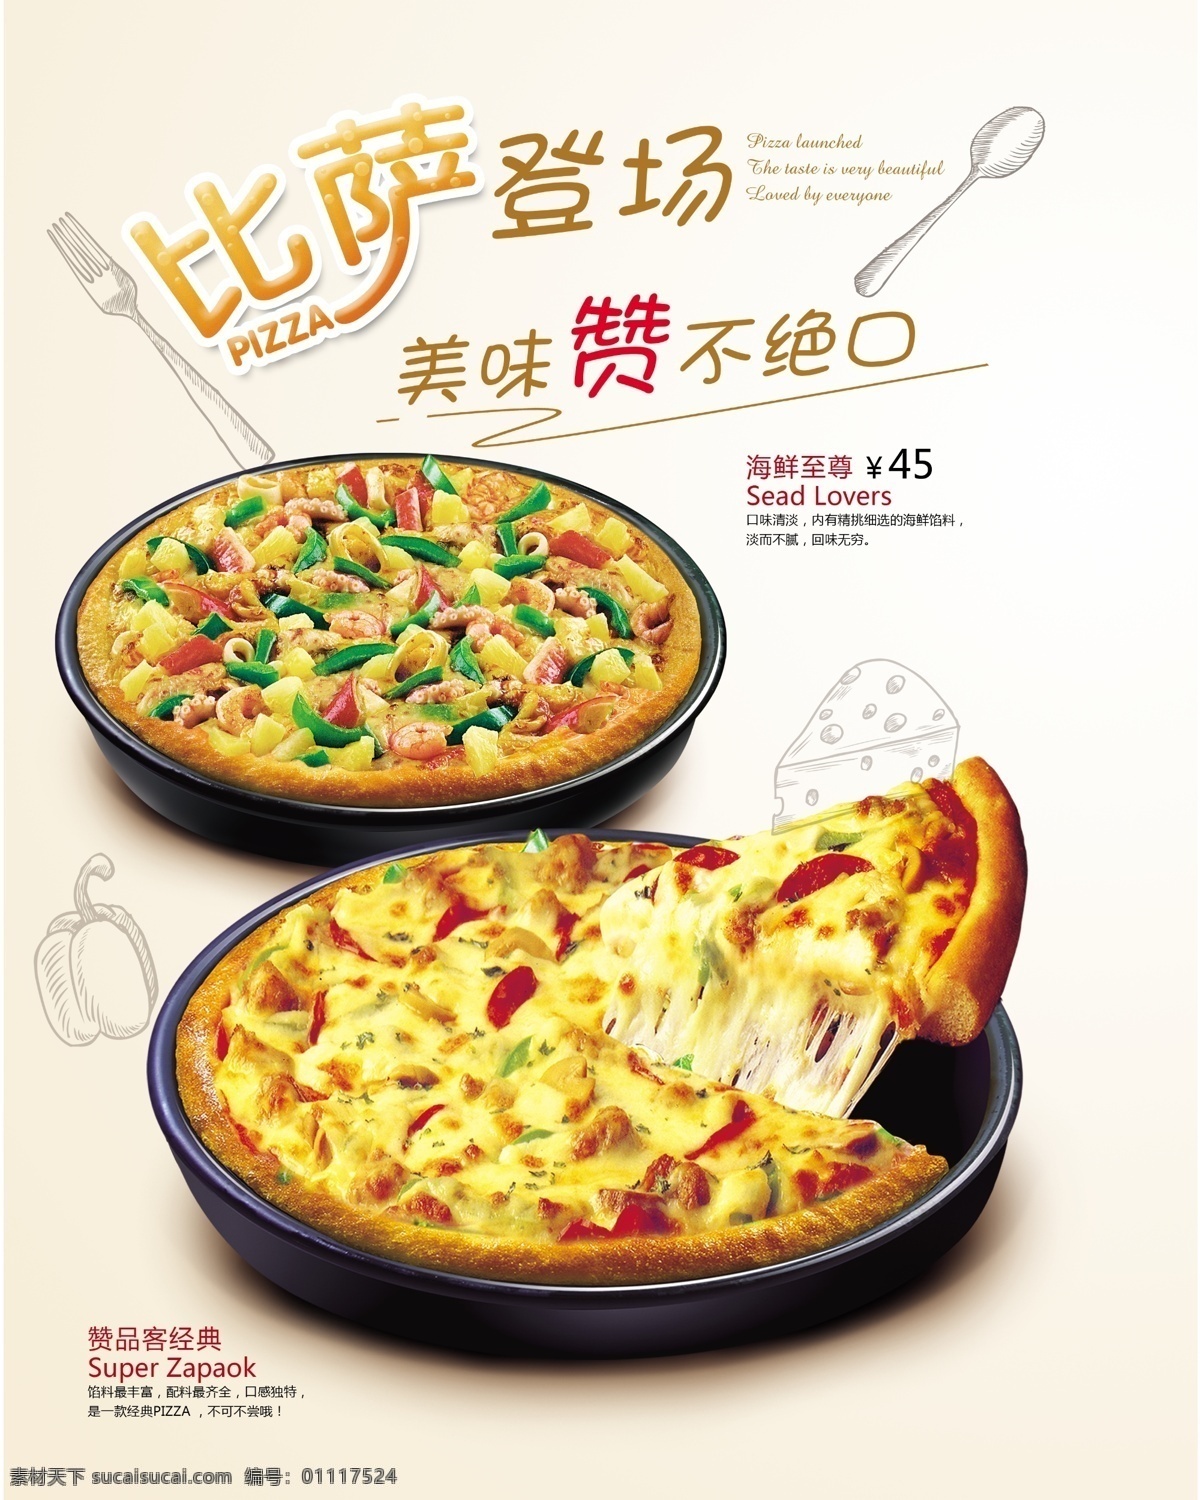 比萨海报 披萨 披萨比萨 比萨 意大利披萨 pizza 美味 中国披萨 披萨做法 西餐厨师 美食 小吃 披萨海报 披萨展板 披萨文化 披萨促销